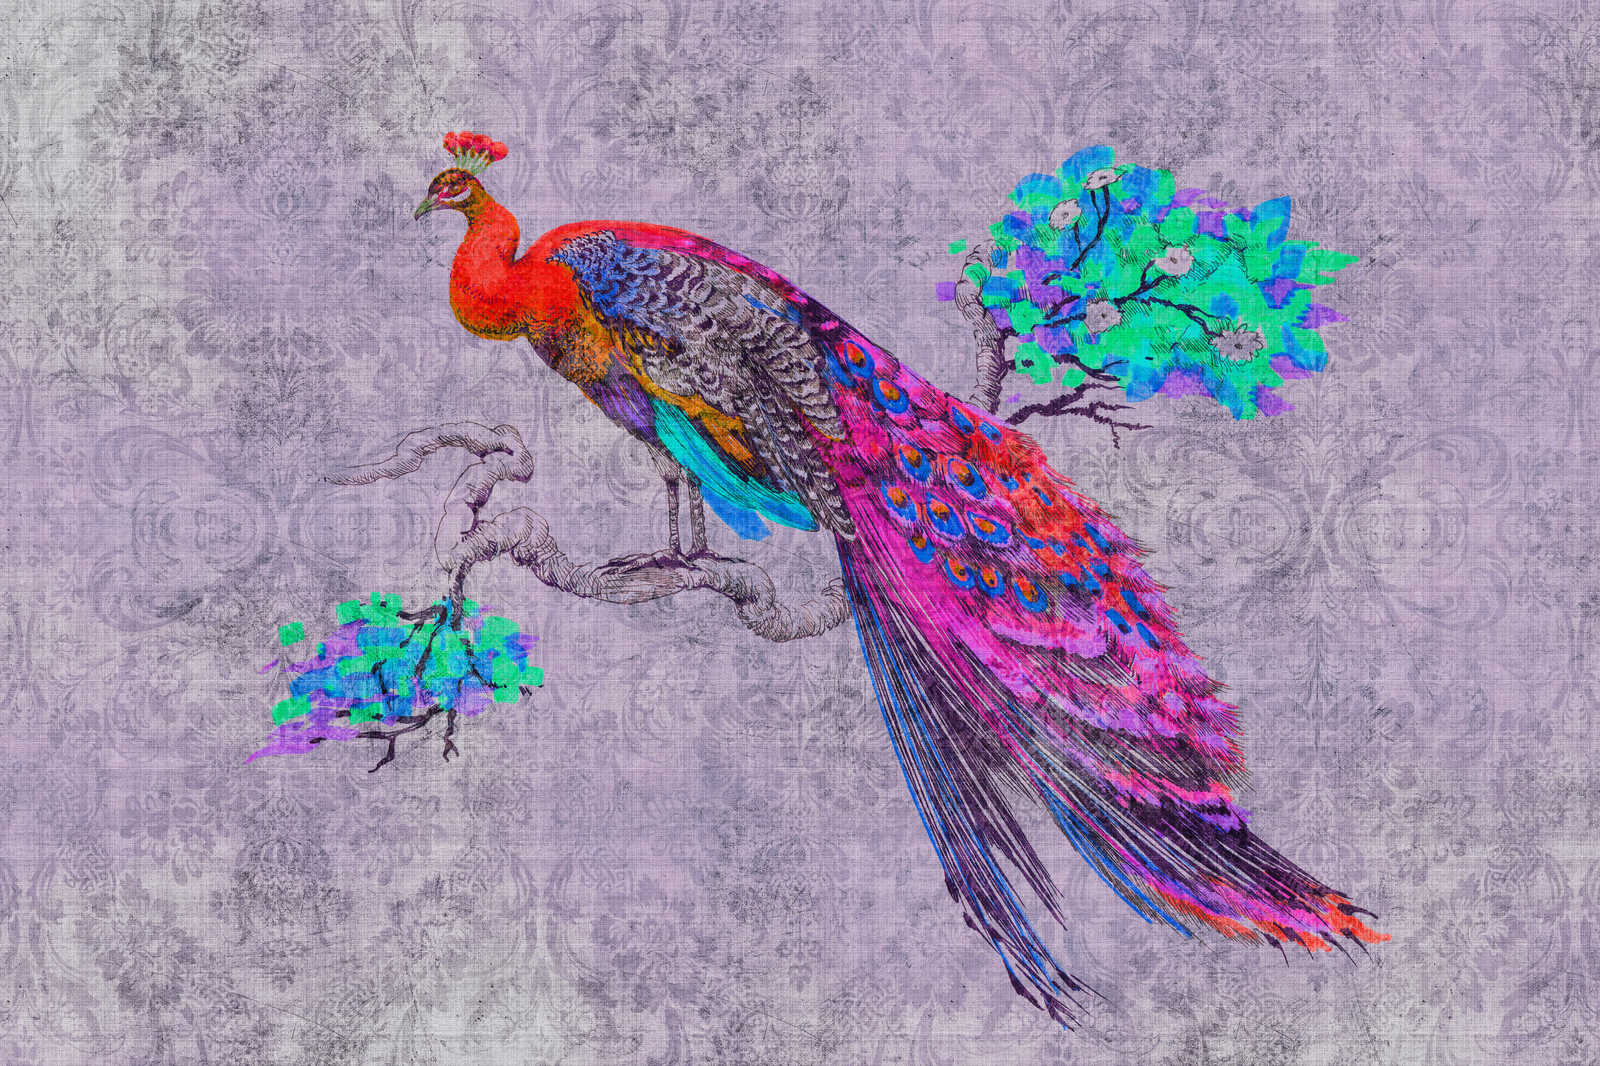             Peacock 3 - Tableau toile avec paon coloré - structure lin naturel - 0,90 m x 0,60 m
        